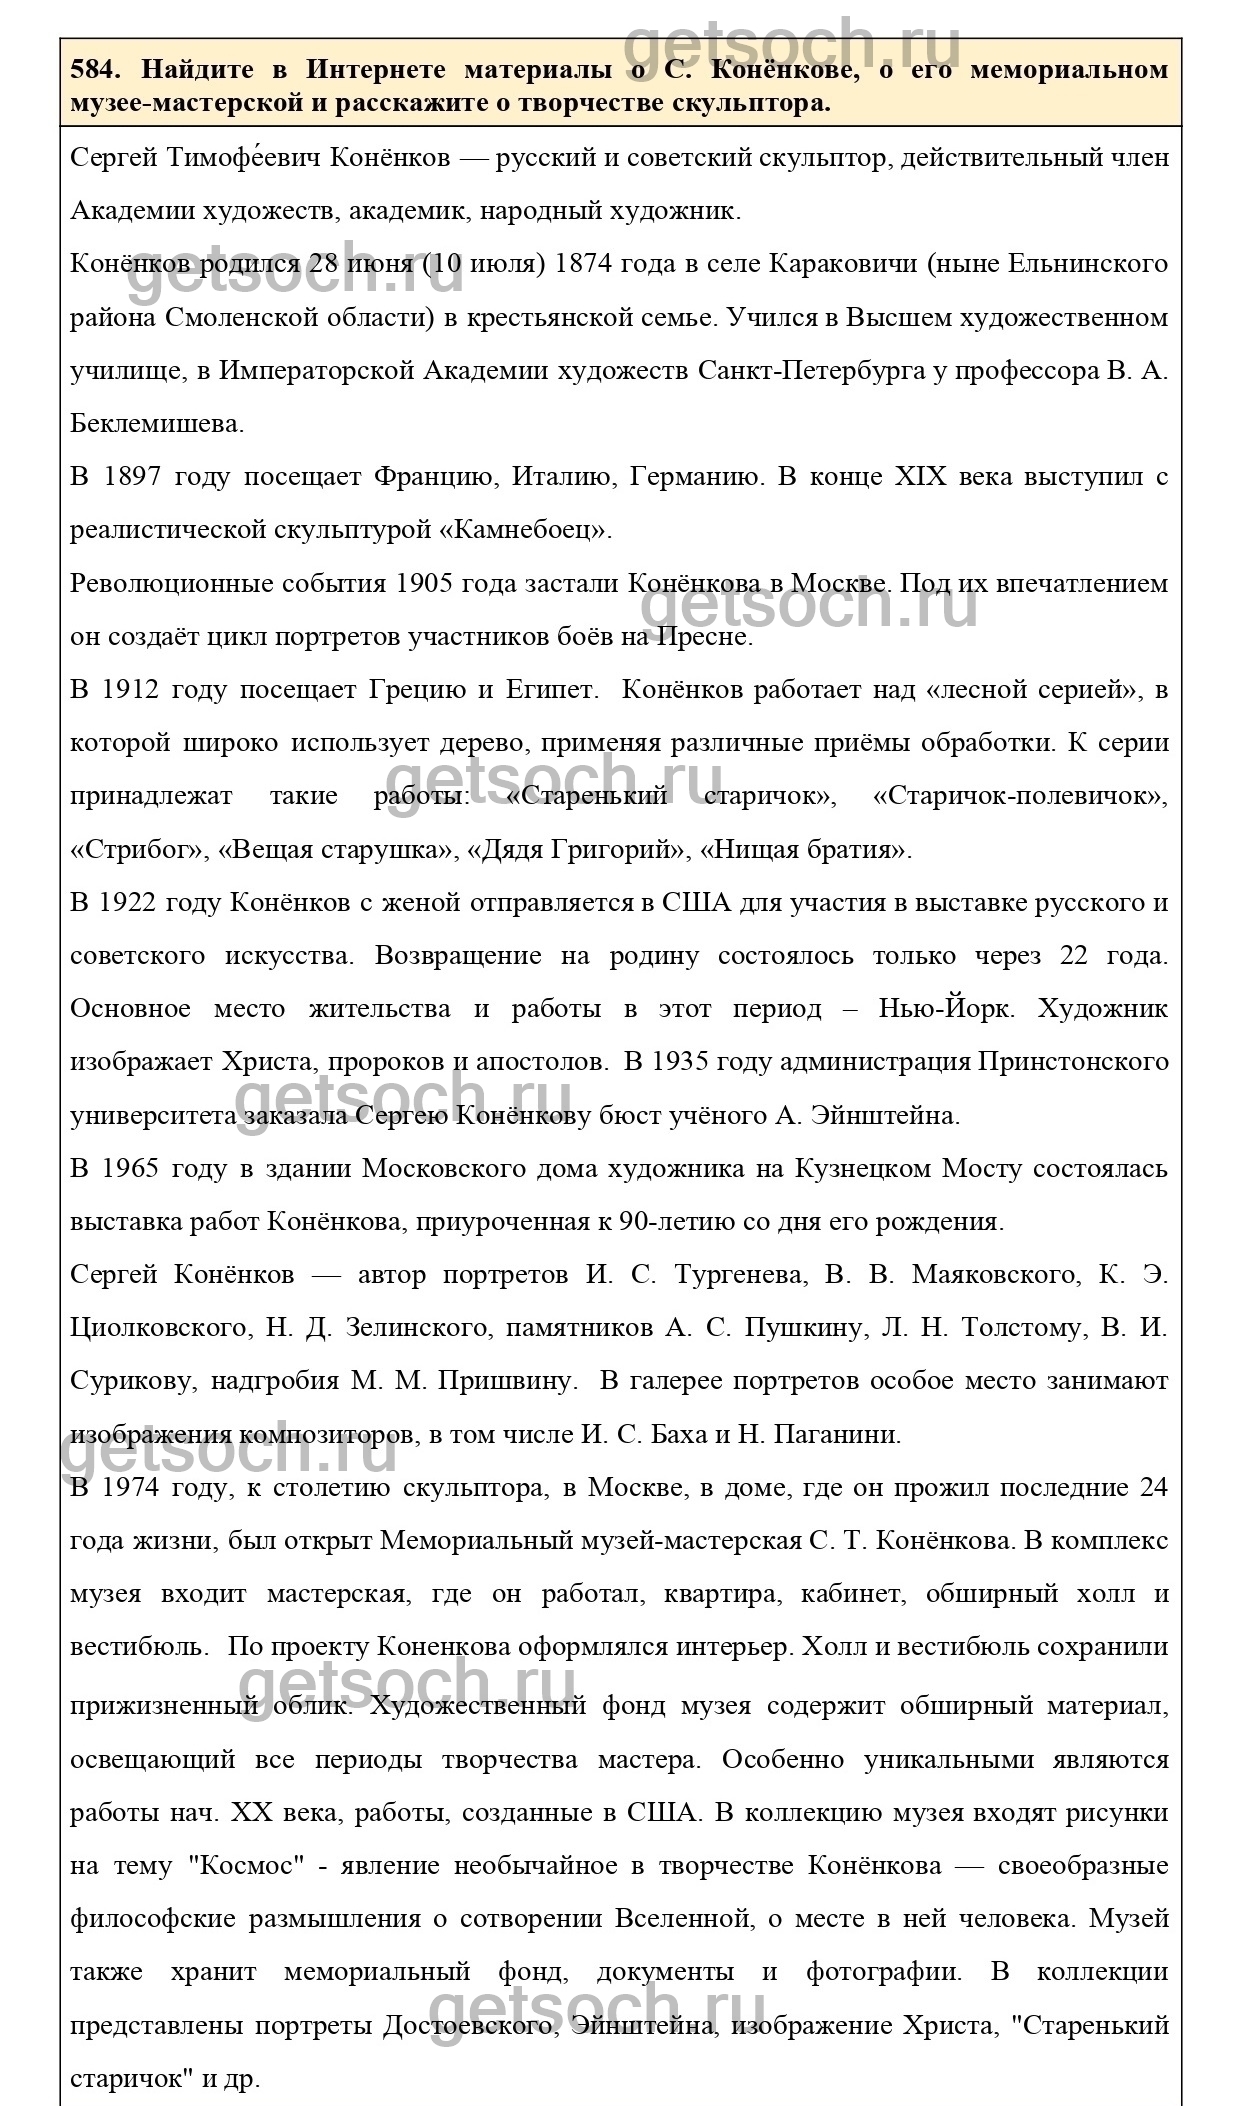 Русский язык 6 класс упражнение 584